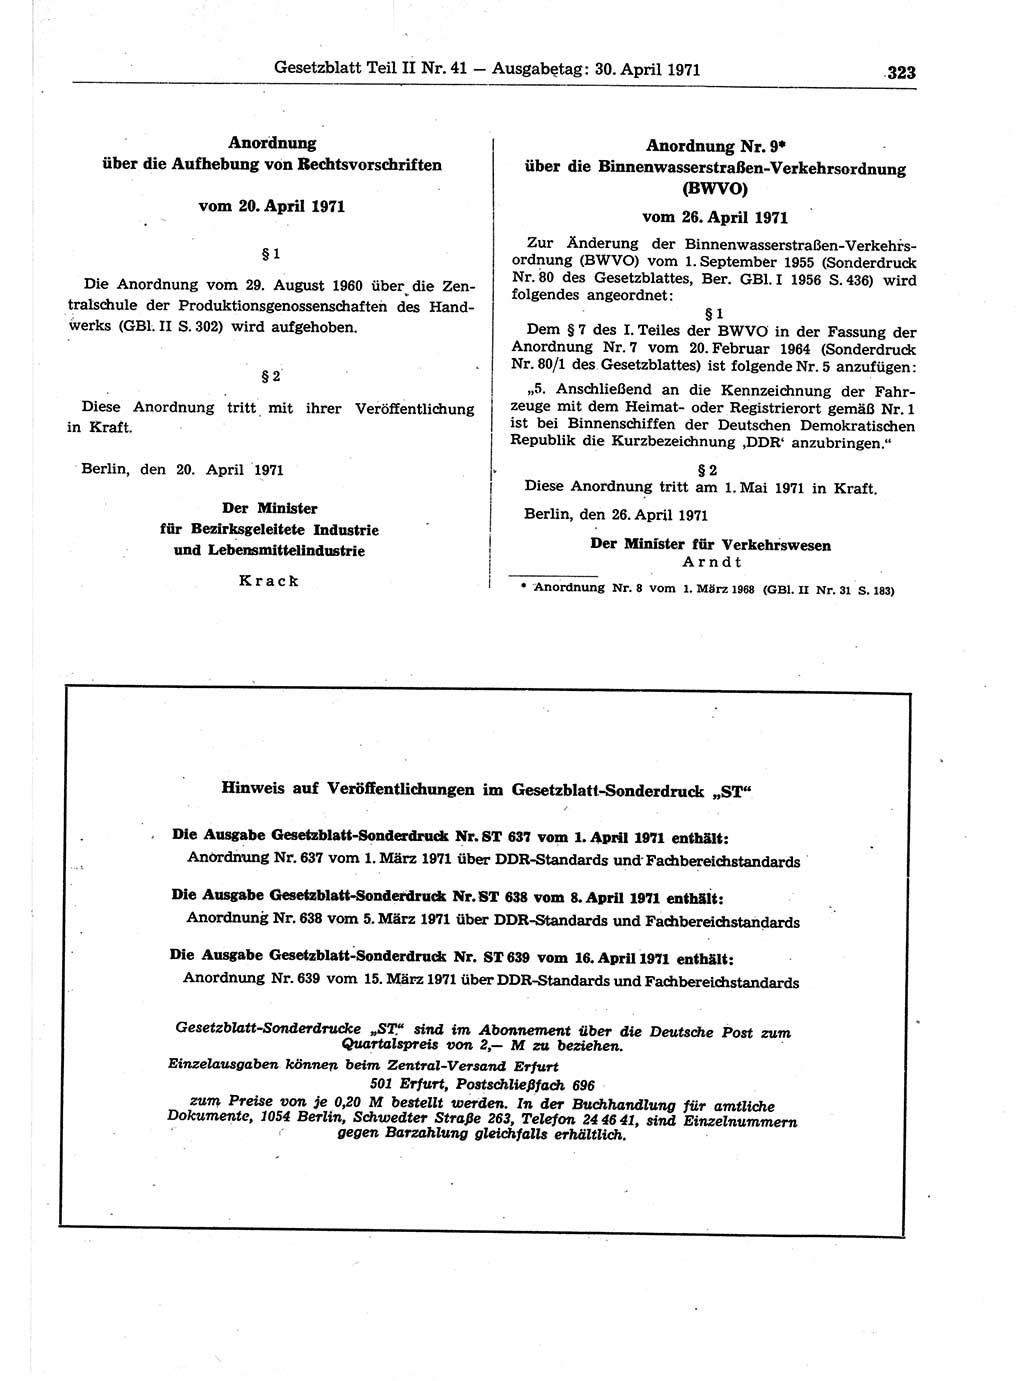 Gesetzblatt (GBl.) der Deutschen Demokratischen Republik (DDR) Teil ⅠⅠ 1971, Seite 323 (GBl. DDR ⅠⅠ 1971, S. 323)